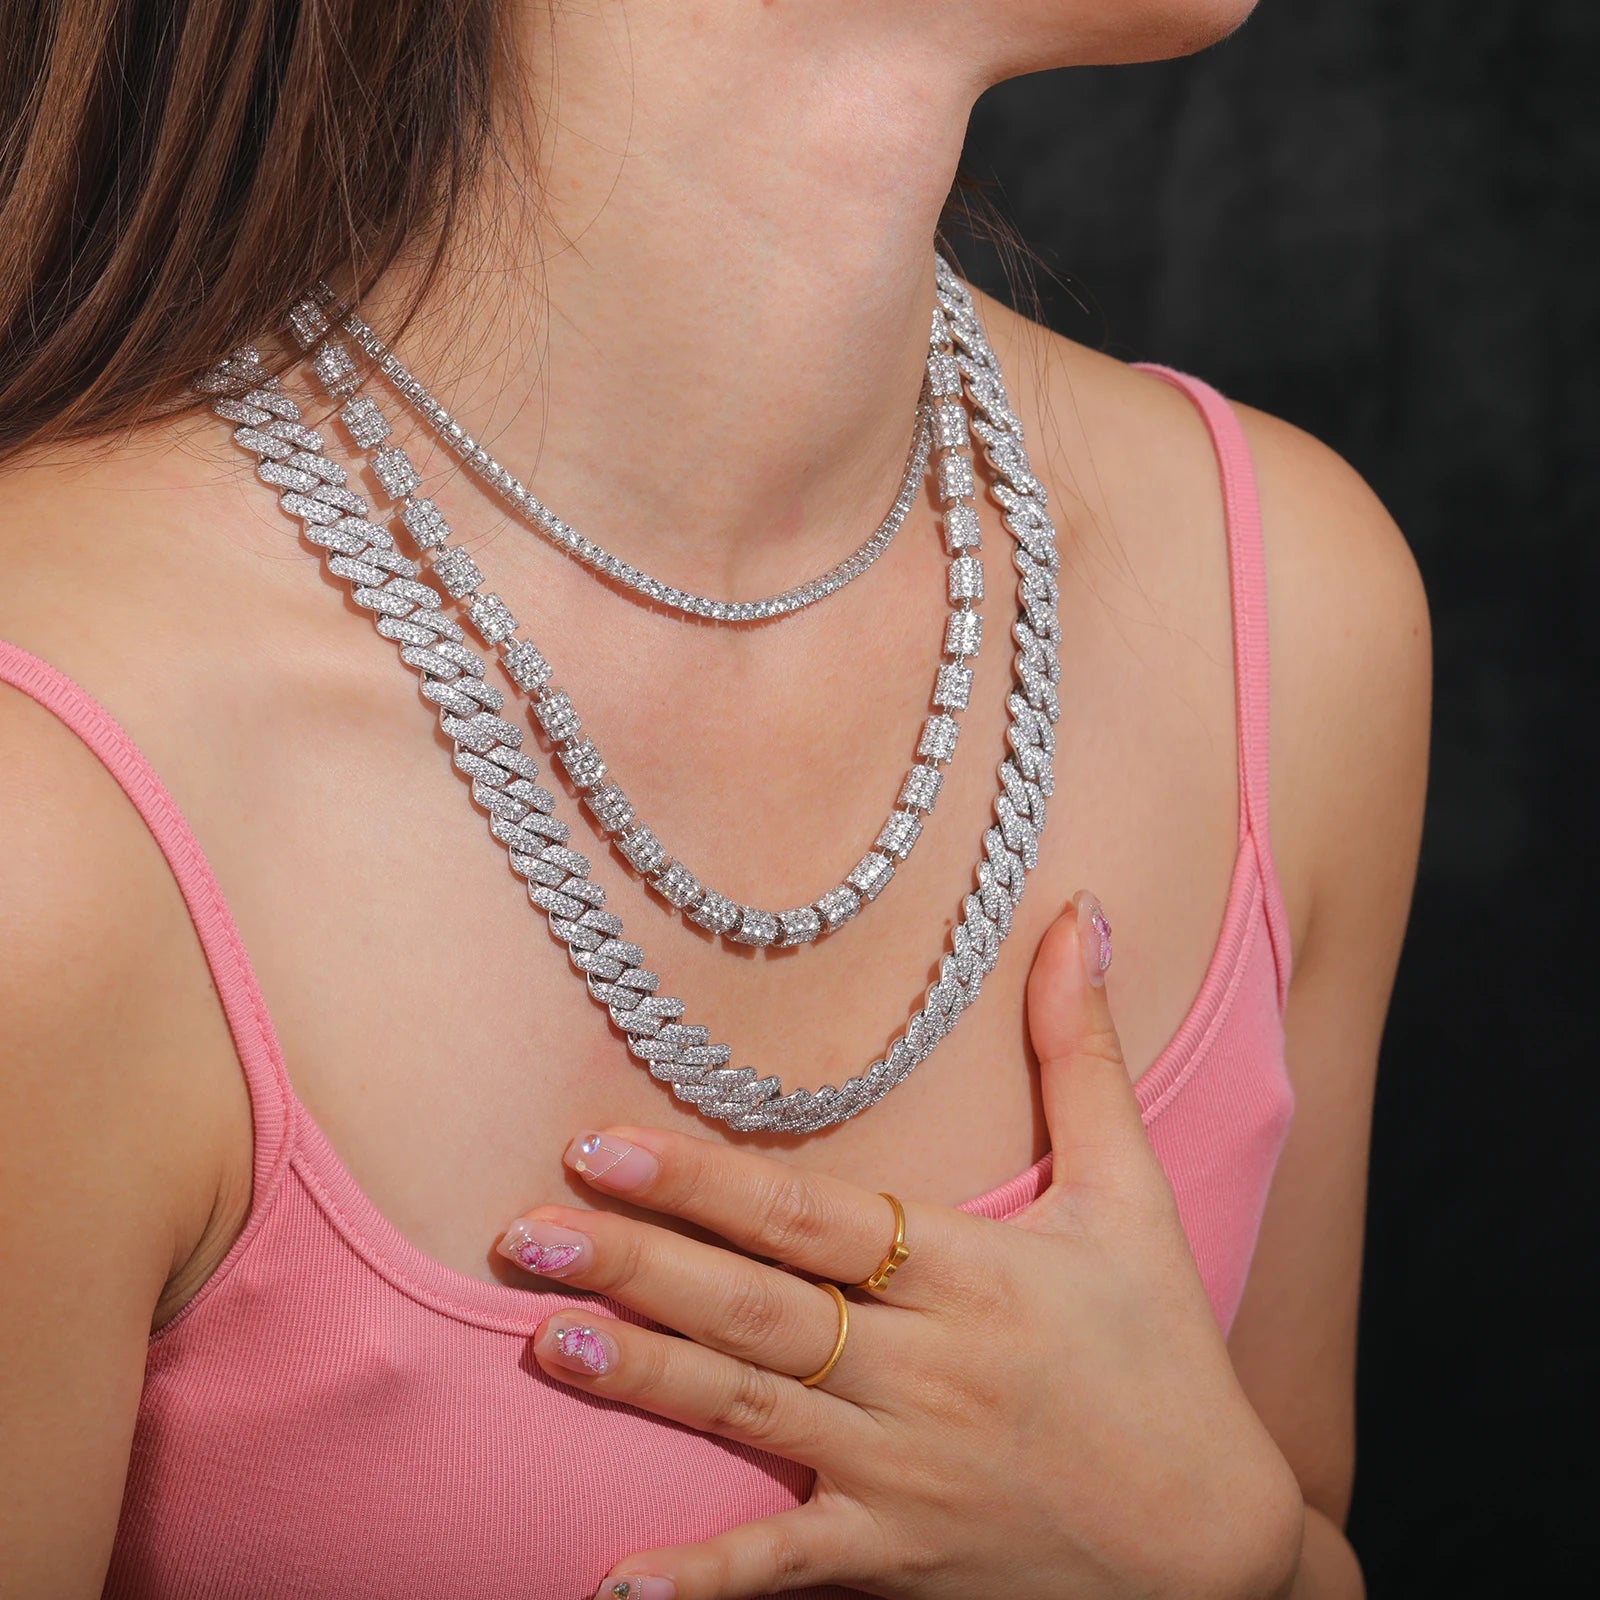 S925 Moissanite Diamond Chain Necklace - 3Pcs/Set